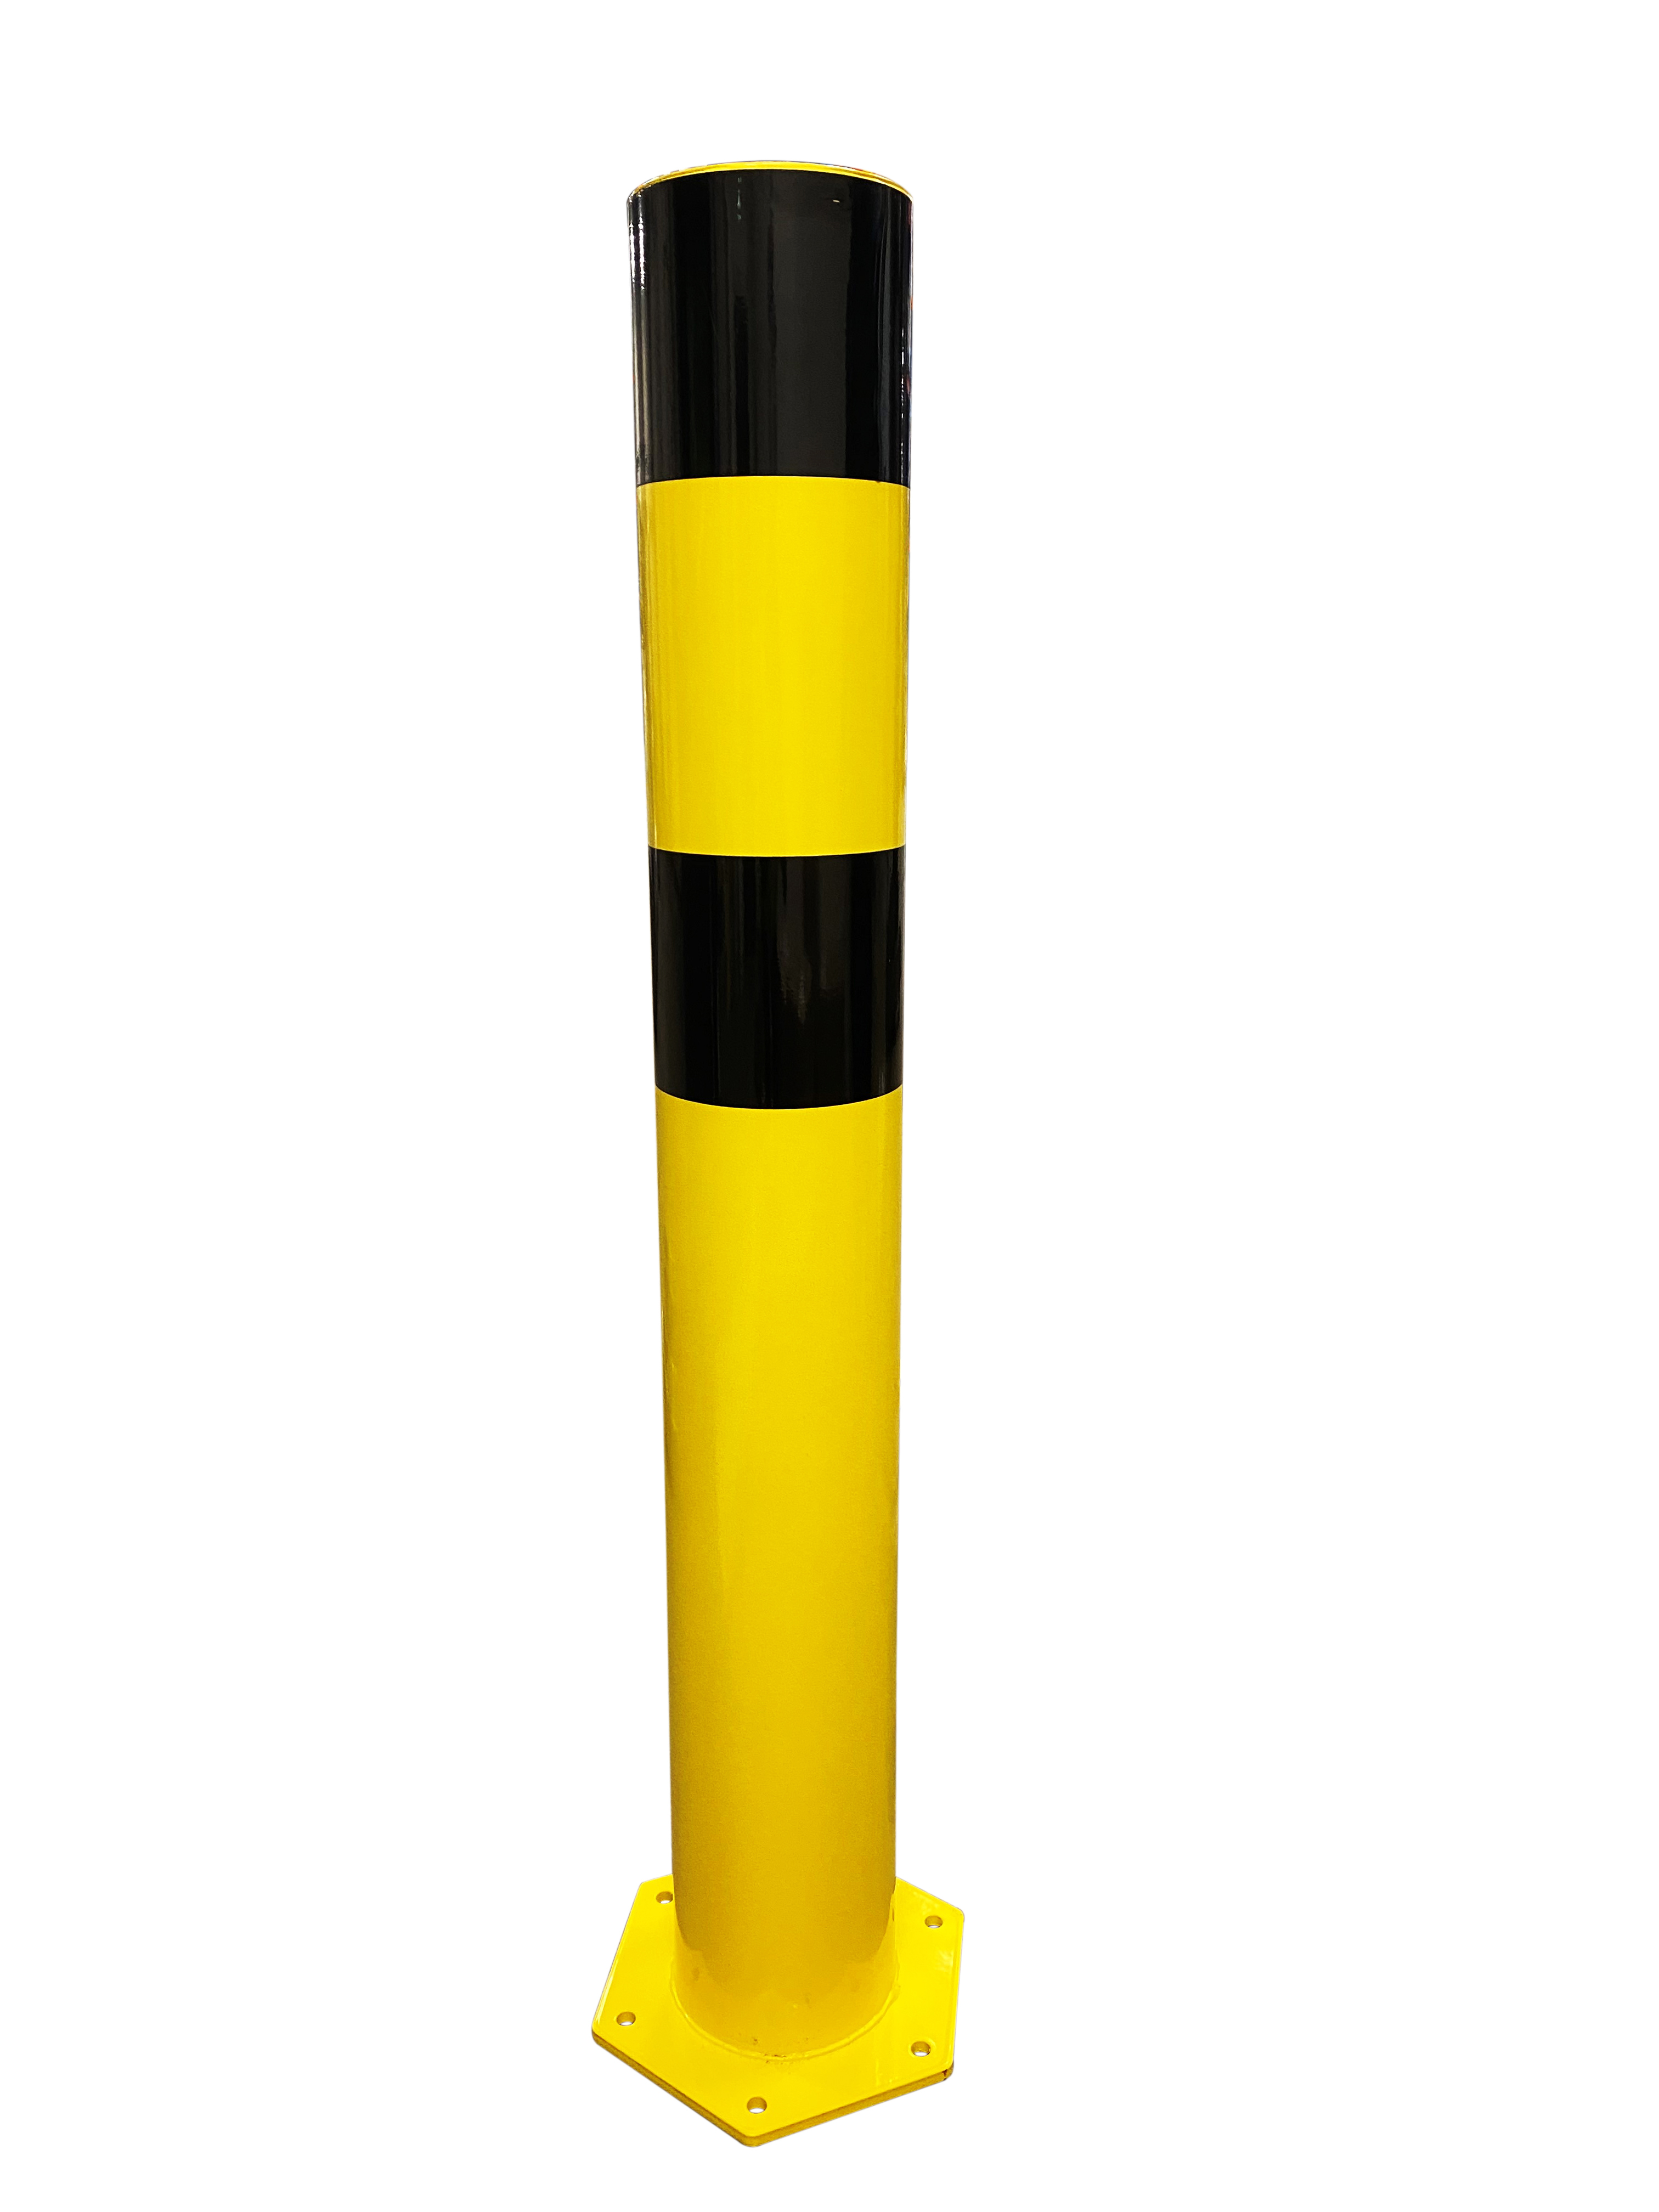 Poteau de protection acier avec platine tube Ø159 mm noir/jaune  VISO - POT159NJ